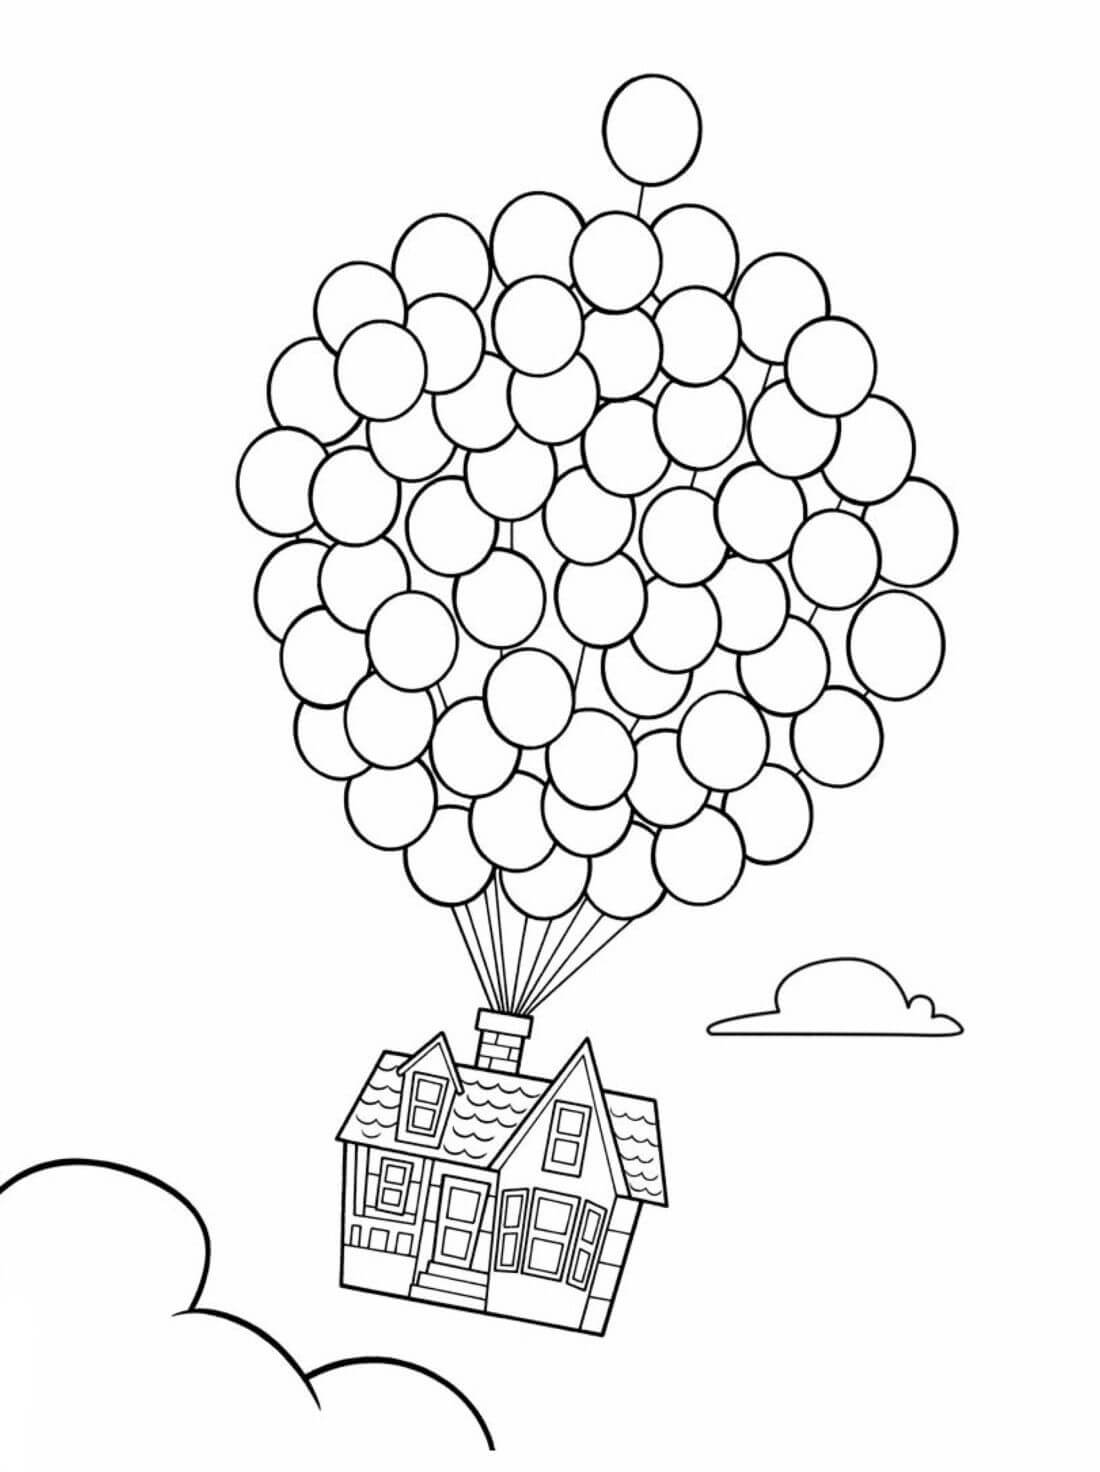 Casa com Balões para colorir